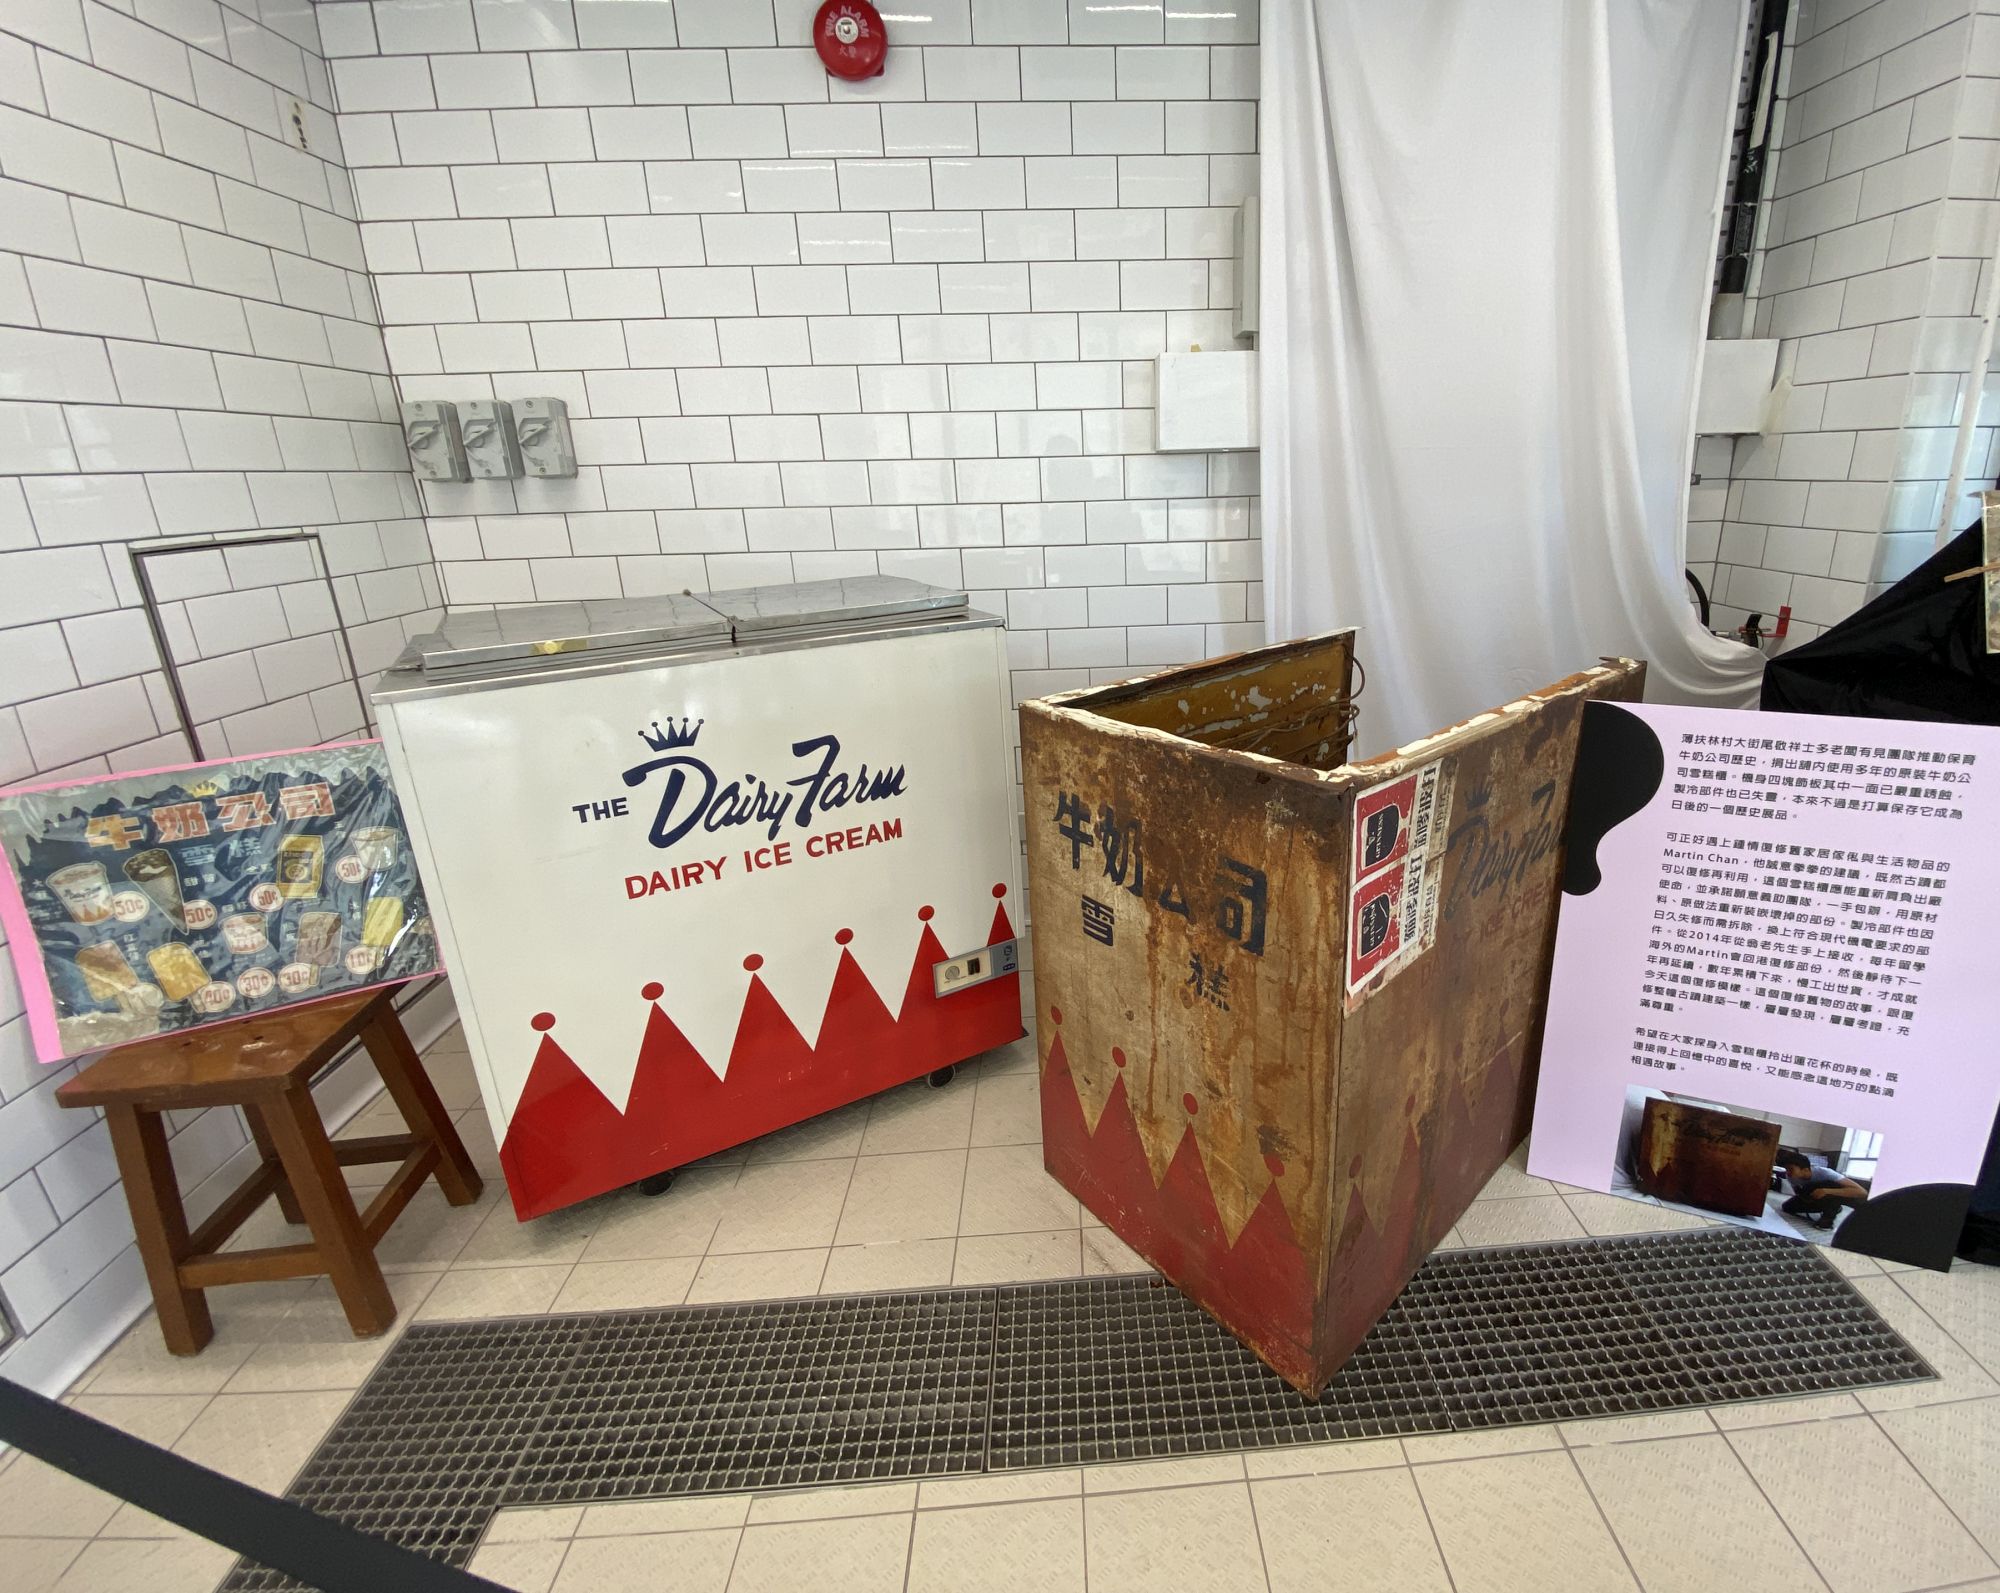 舊牛奶公司的文物，包括當年的乳品容器、海報、員工證、相片、雪糕櫃等，展示舊牛奶公司的歷史和昔日牧場運作的情景。